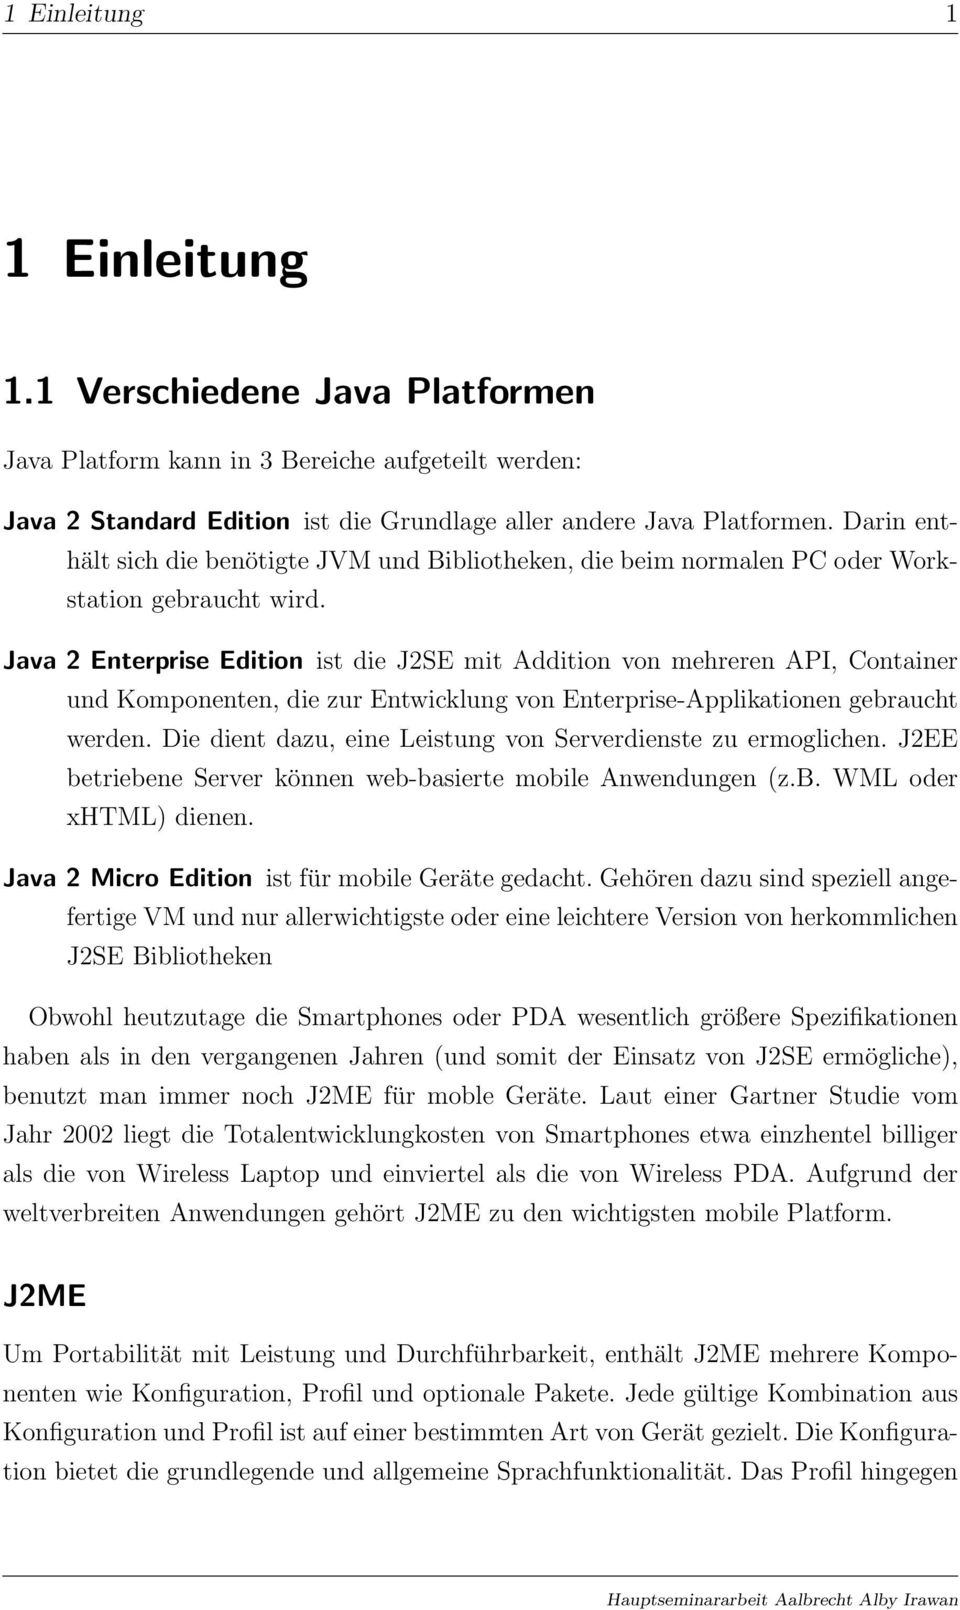 Java 2 Enterprise Edition ist die J2SE mit Addition von mehreren API, Container und Komponenten, die zur Entwicklung von Enterprise-Applikationen gebraucht werden.